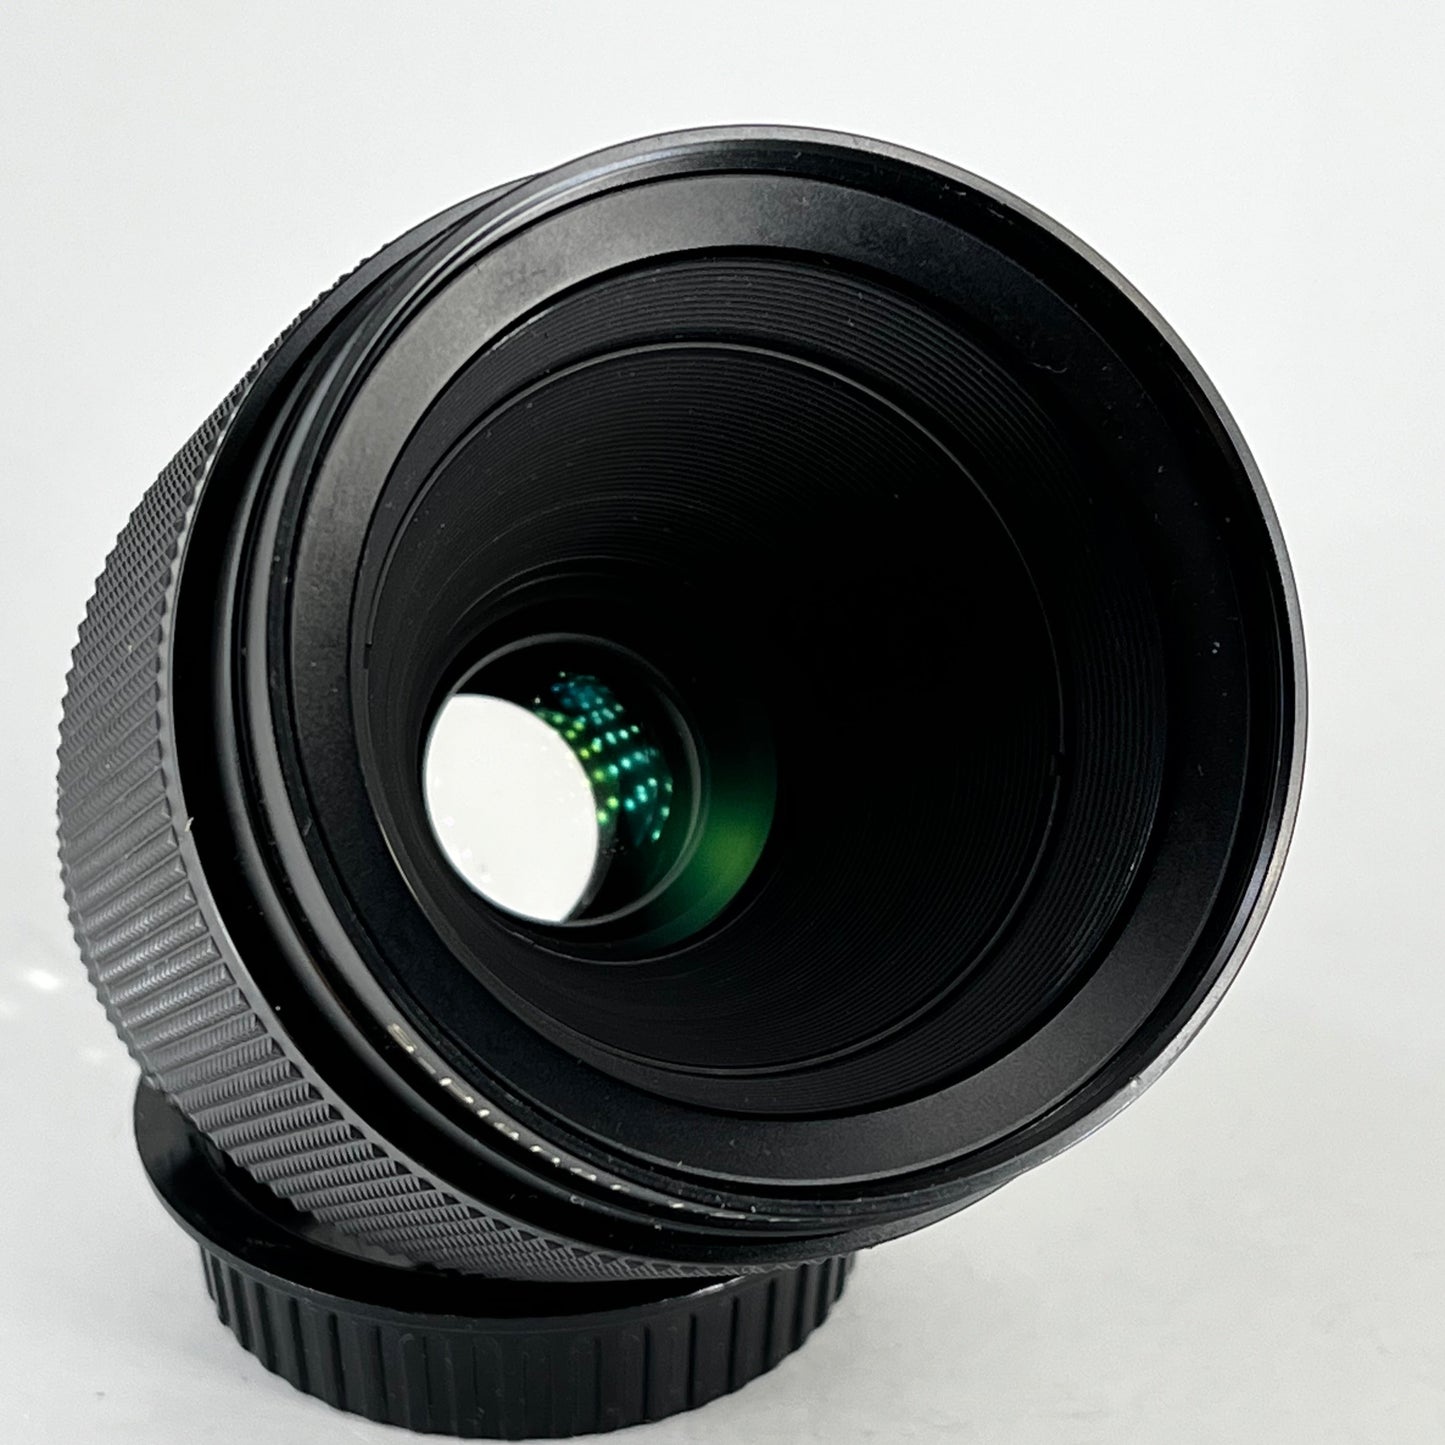 Carl Zeiss 60mm f2.8 Makro S-Planar